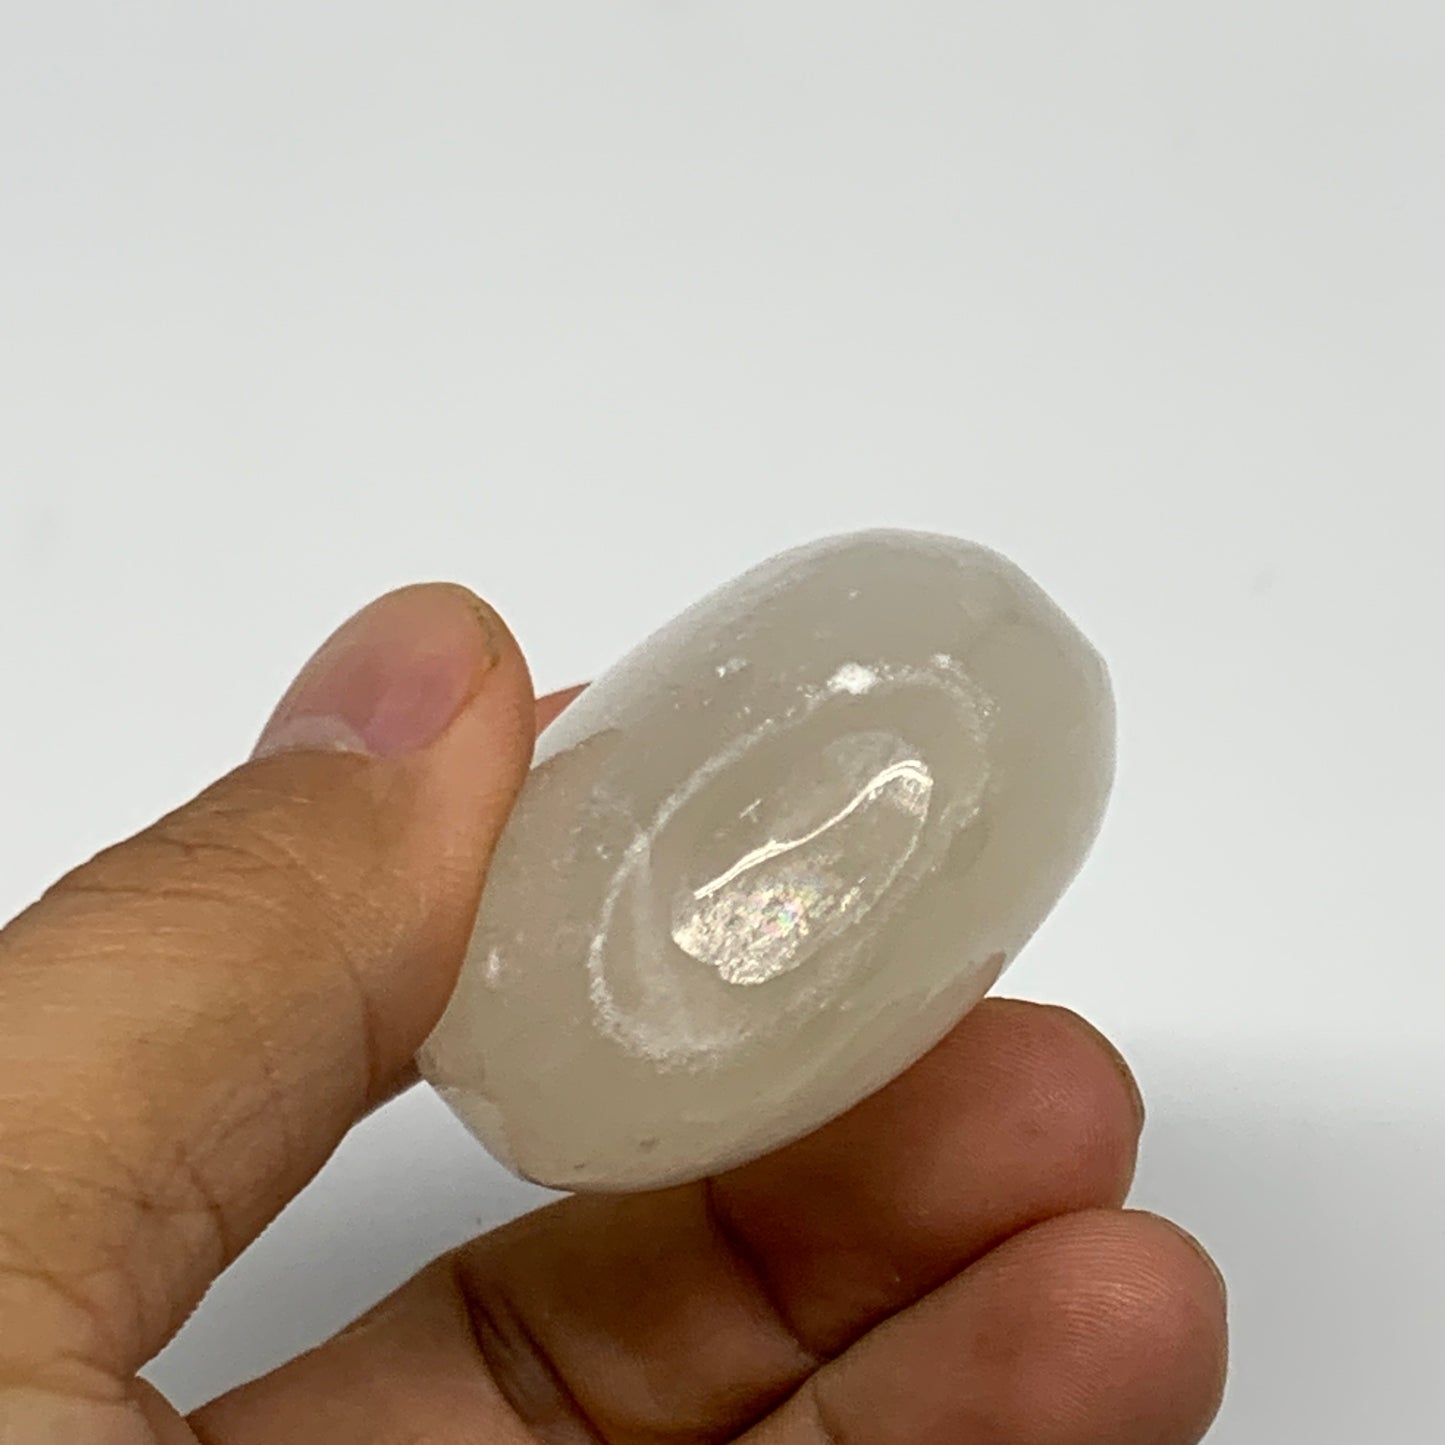 85g, 2.3"x1.7"x1", White Satin Spar (Selenite) Palmstone Crystal Gypsum, B22605